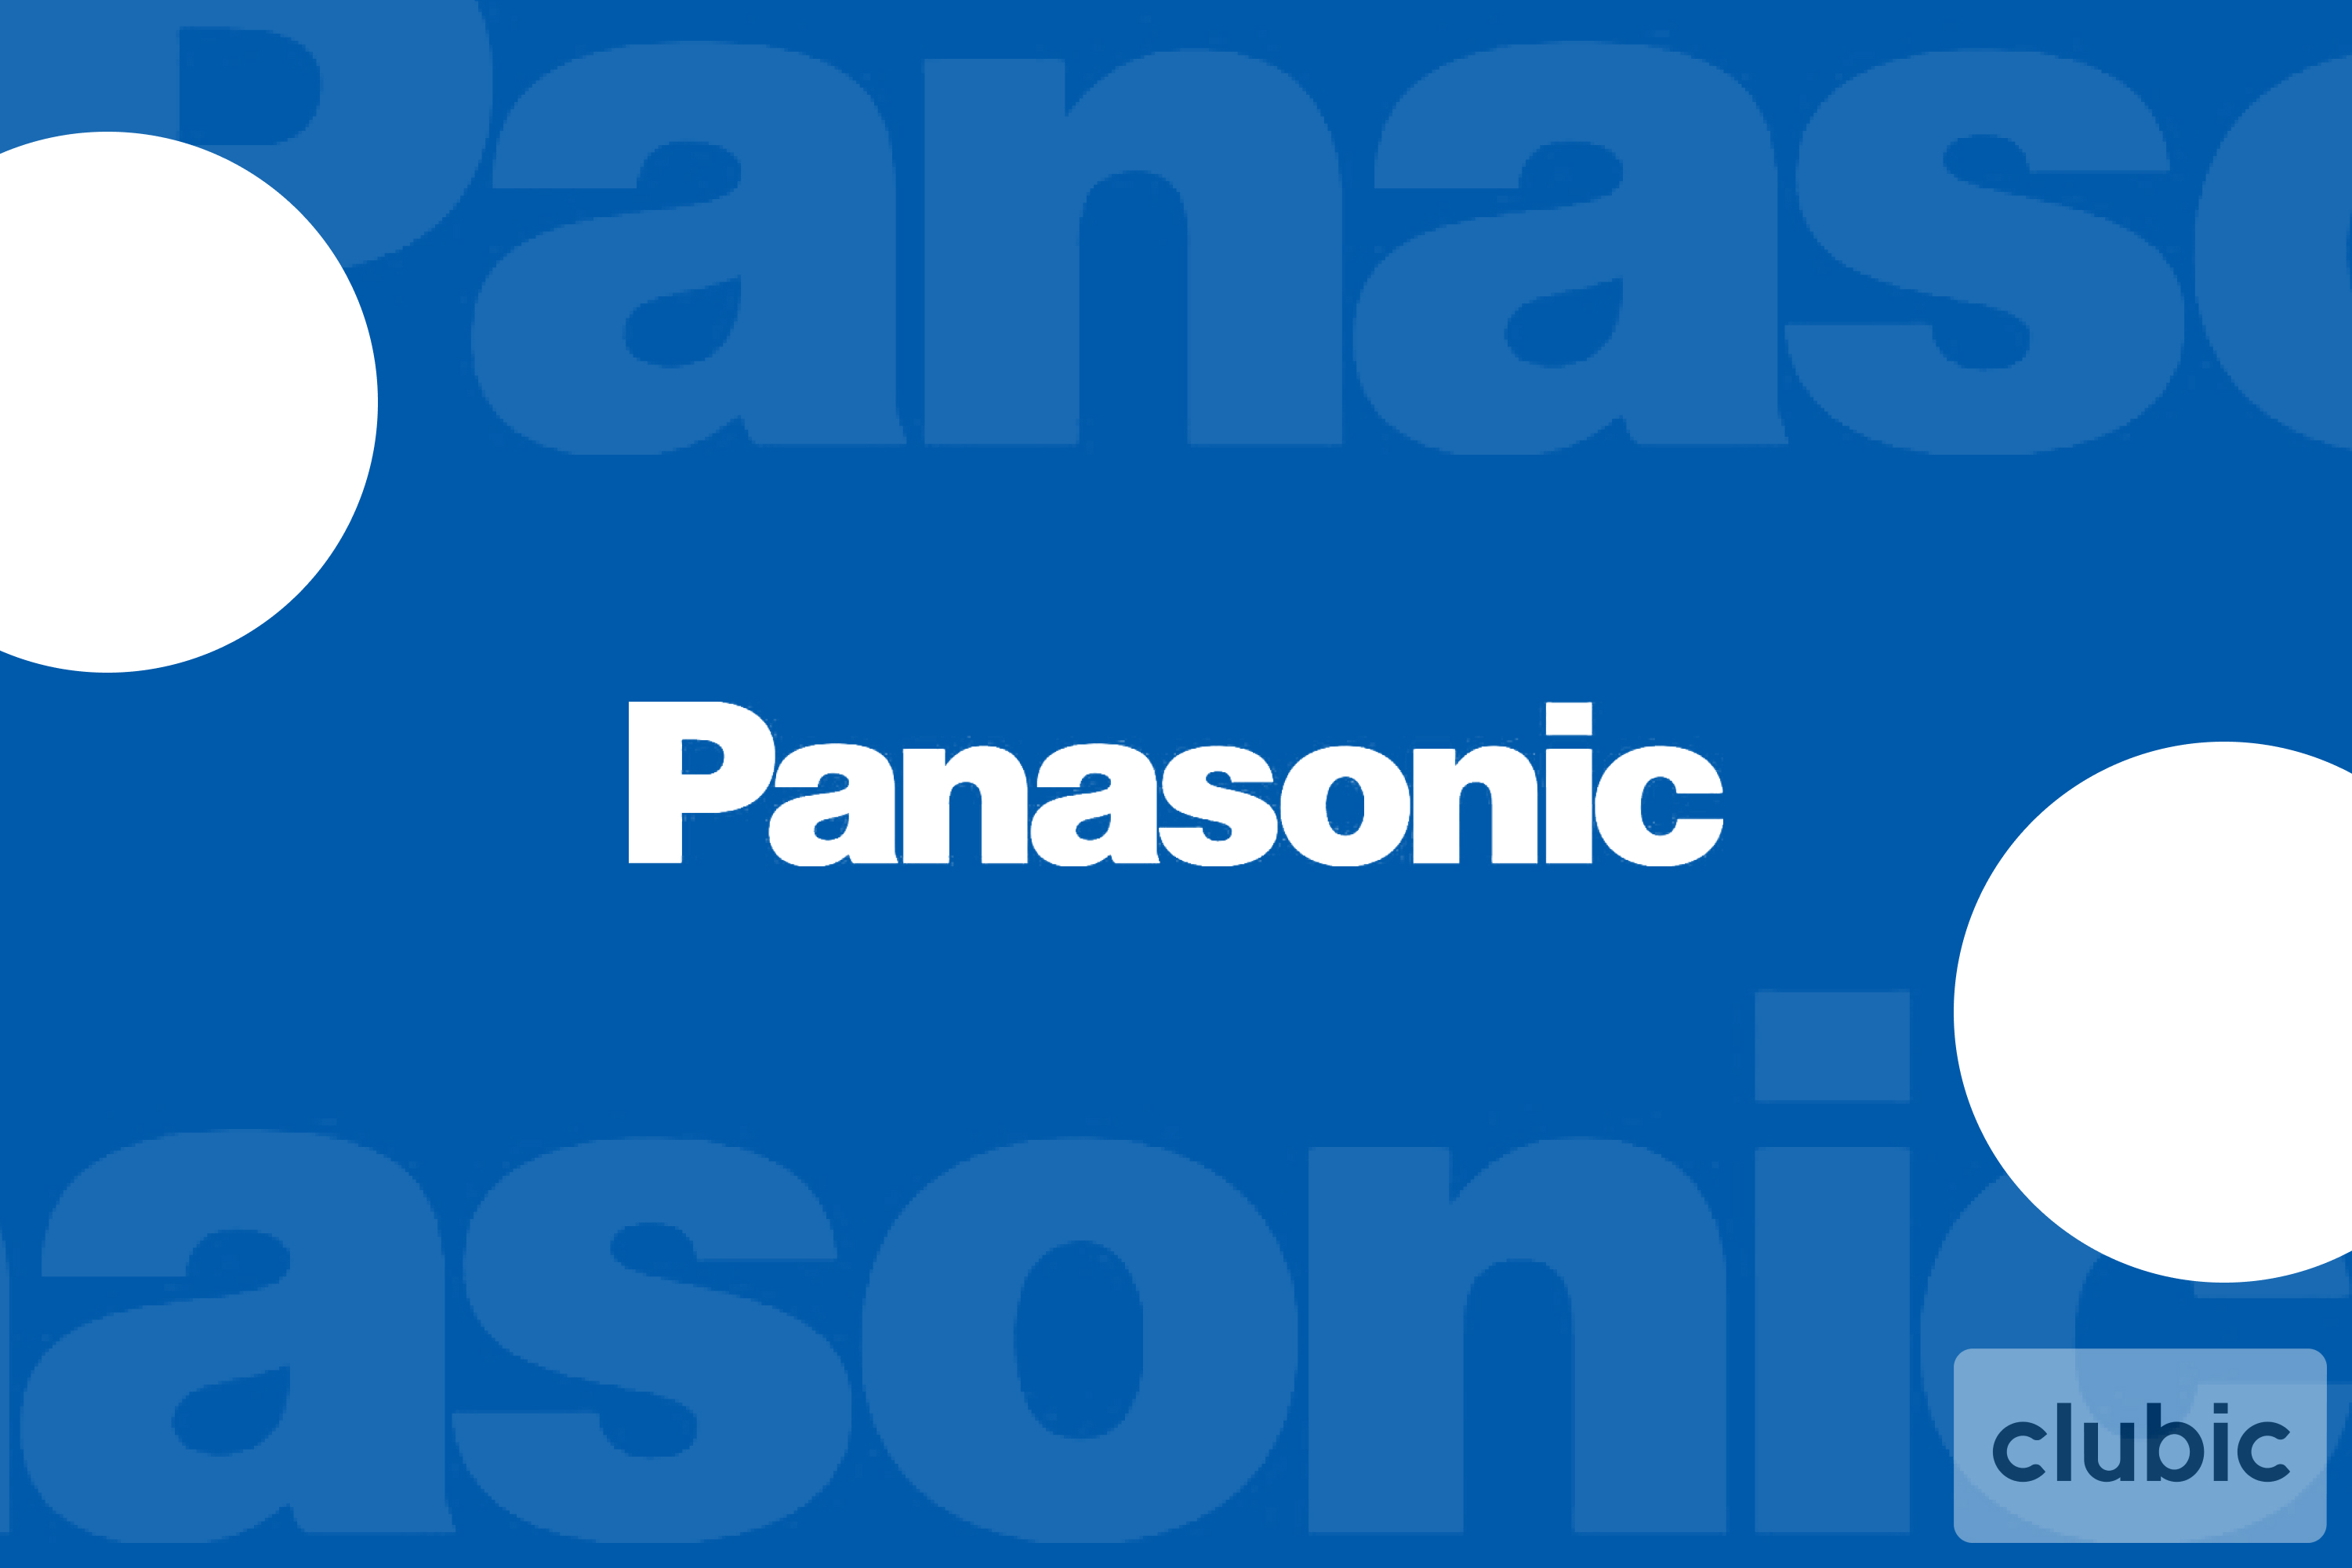 Panasonic délocalise sa production de téléviseurs, jusqu'alors située en République tchèque